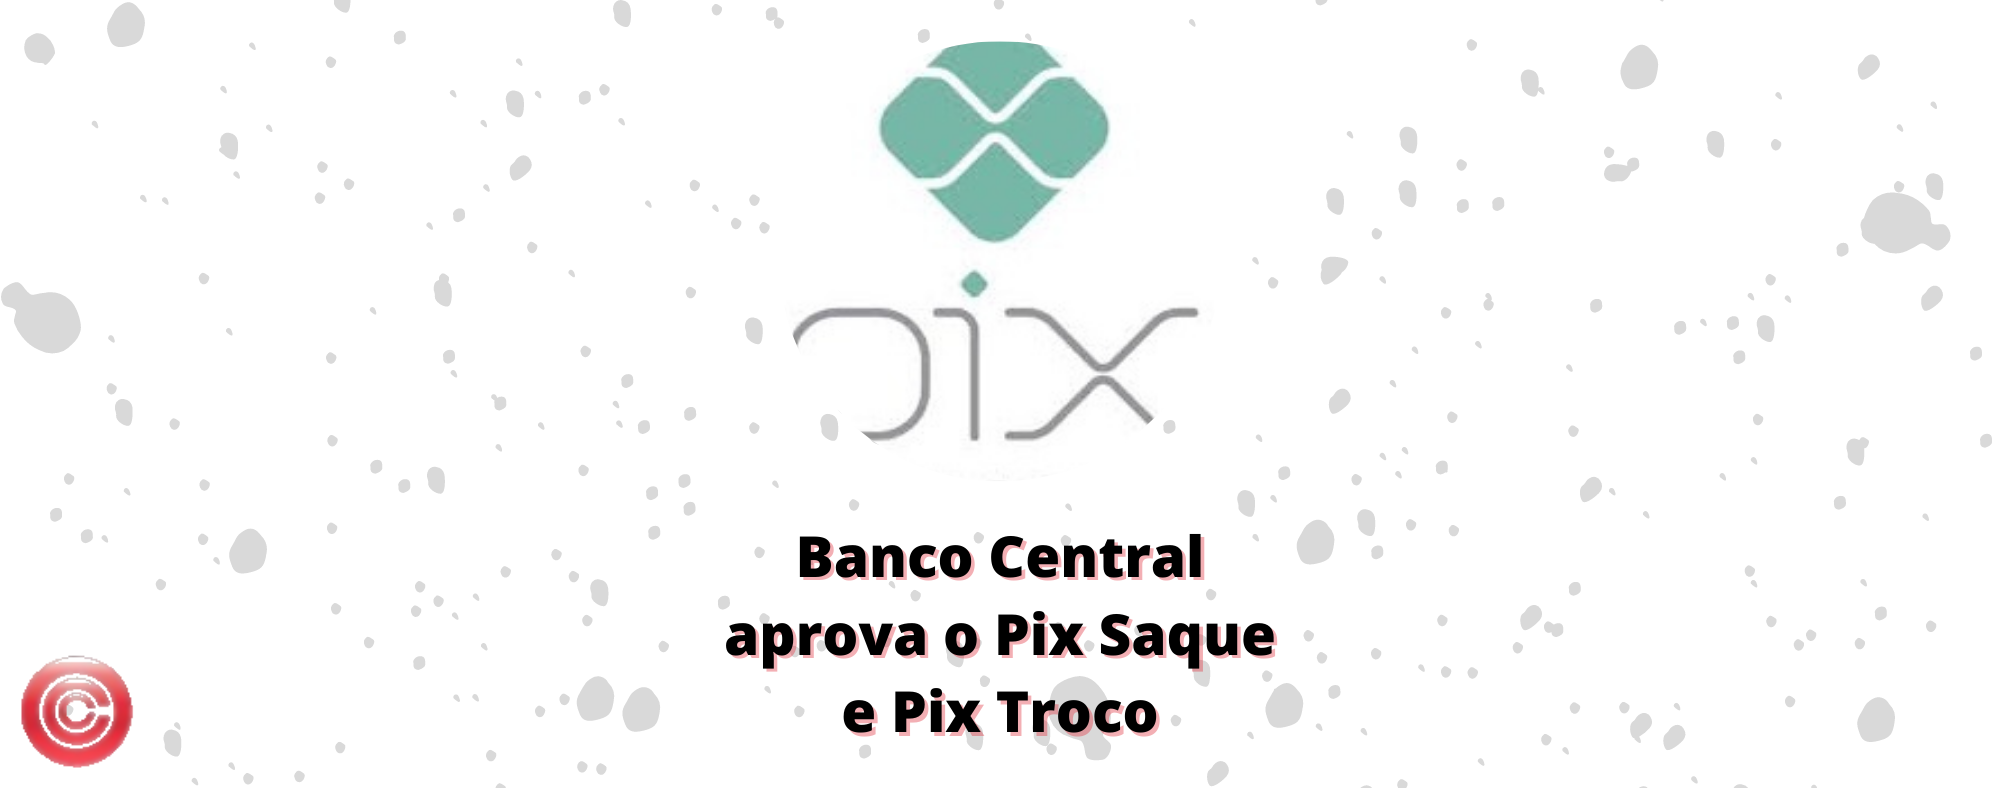 Banco Central aprova Pix Saque e Pix Troco